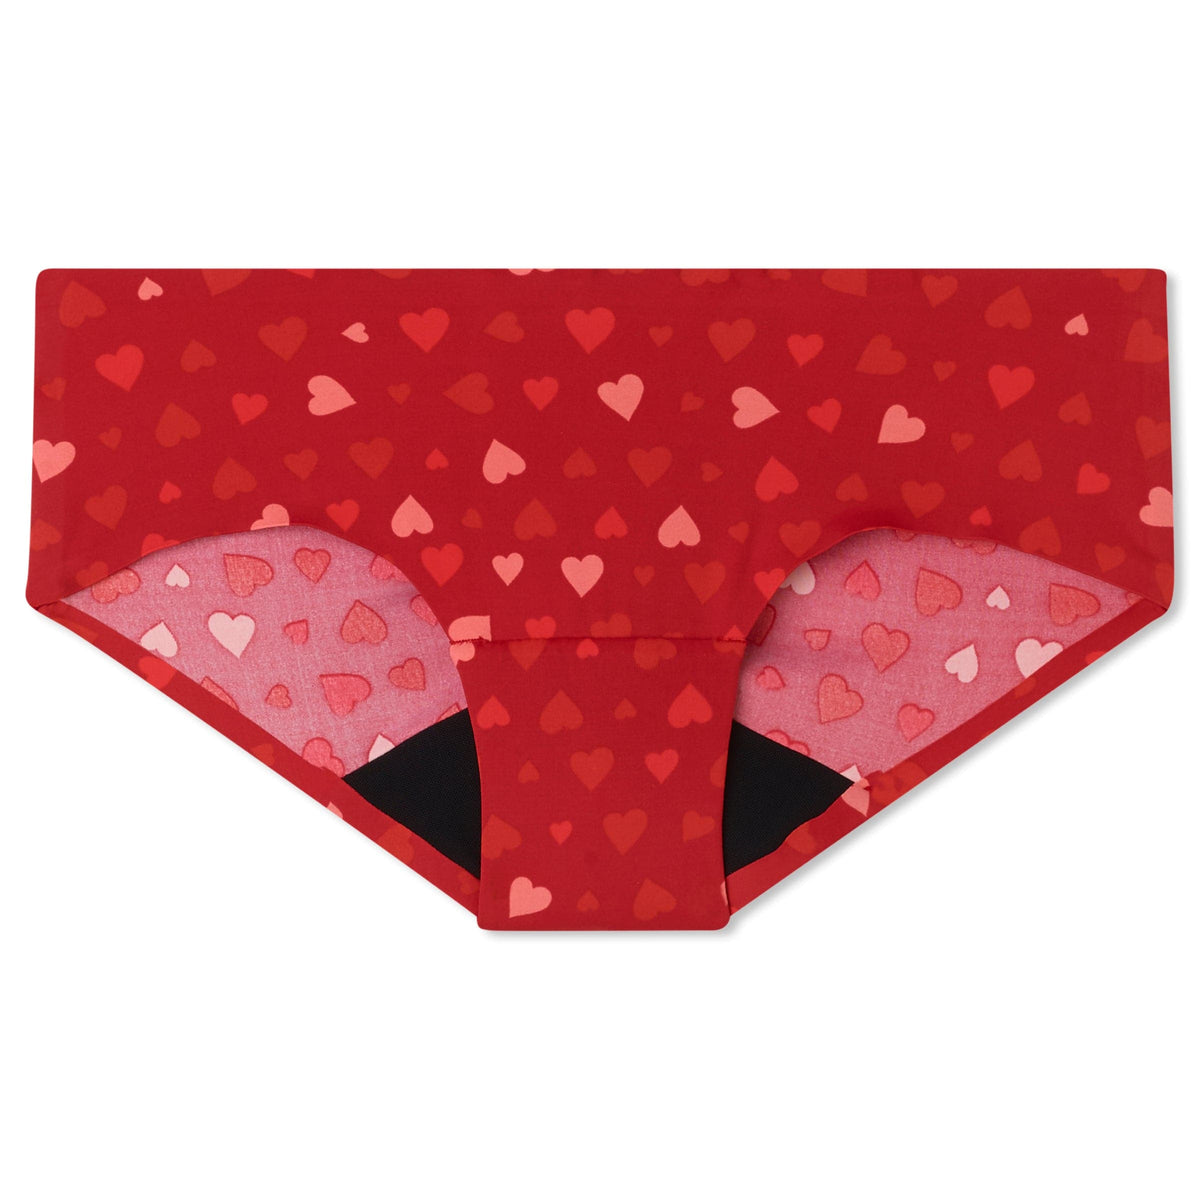 Period Underwear – Girl E Kits